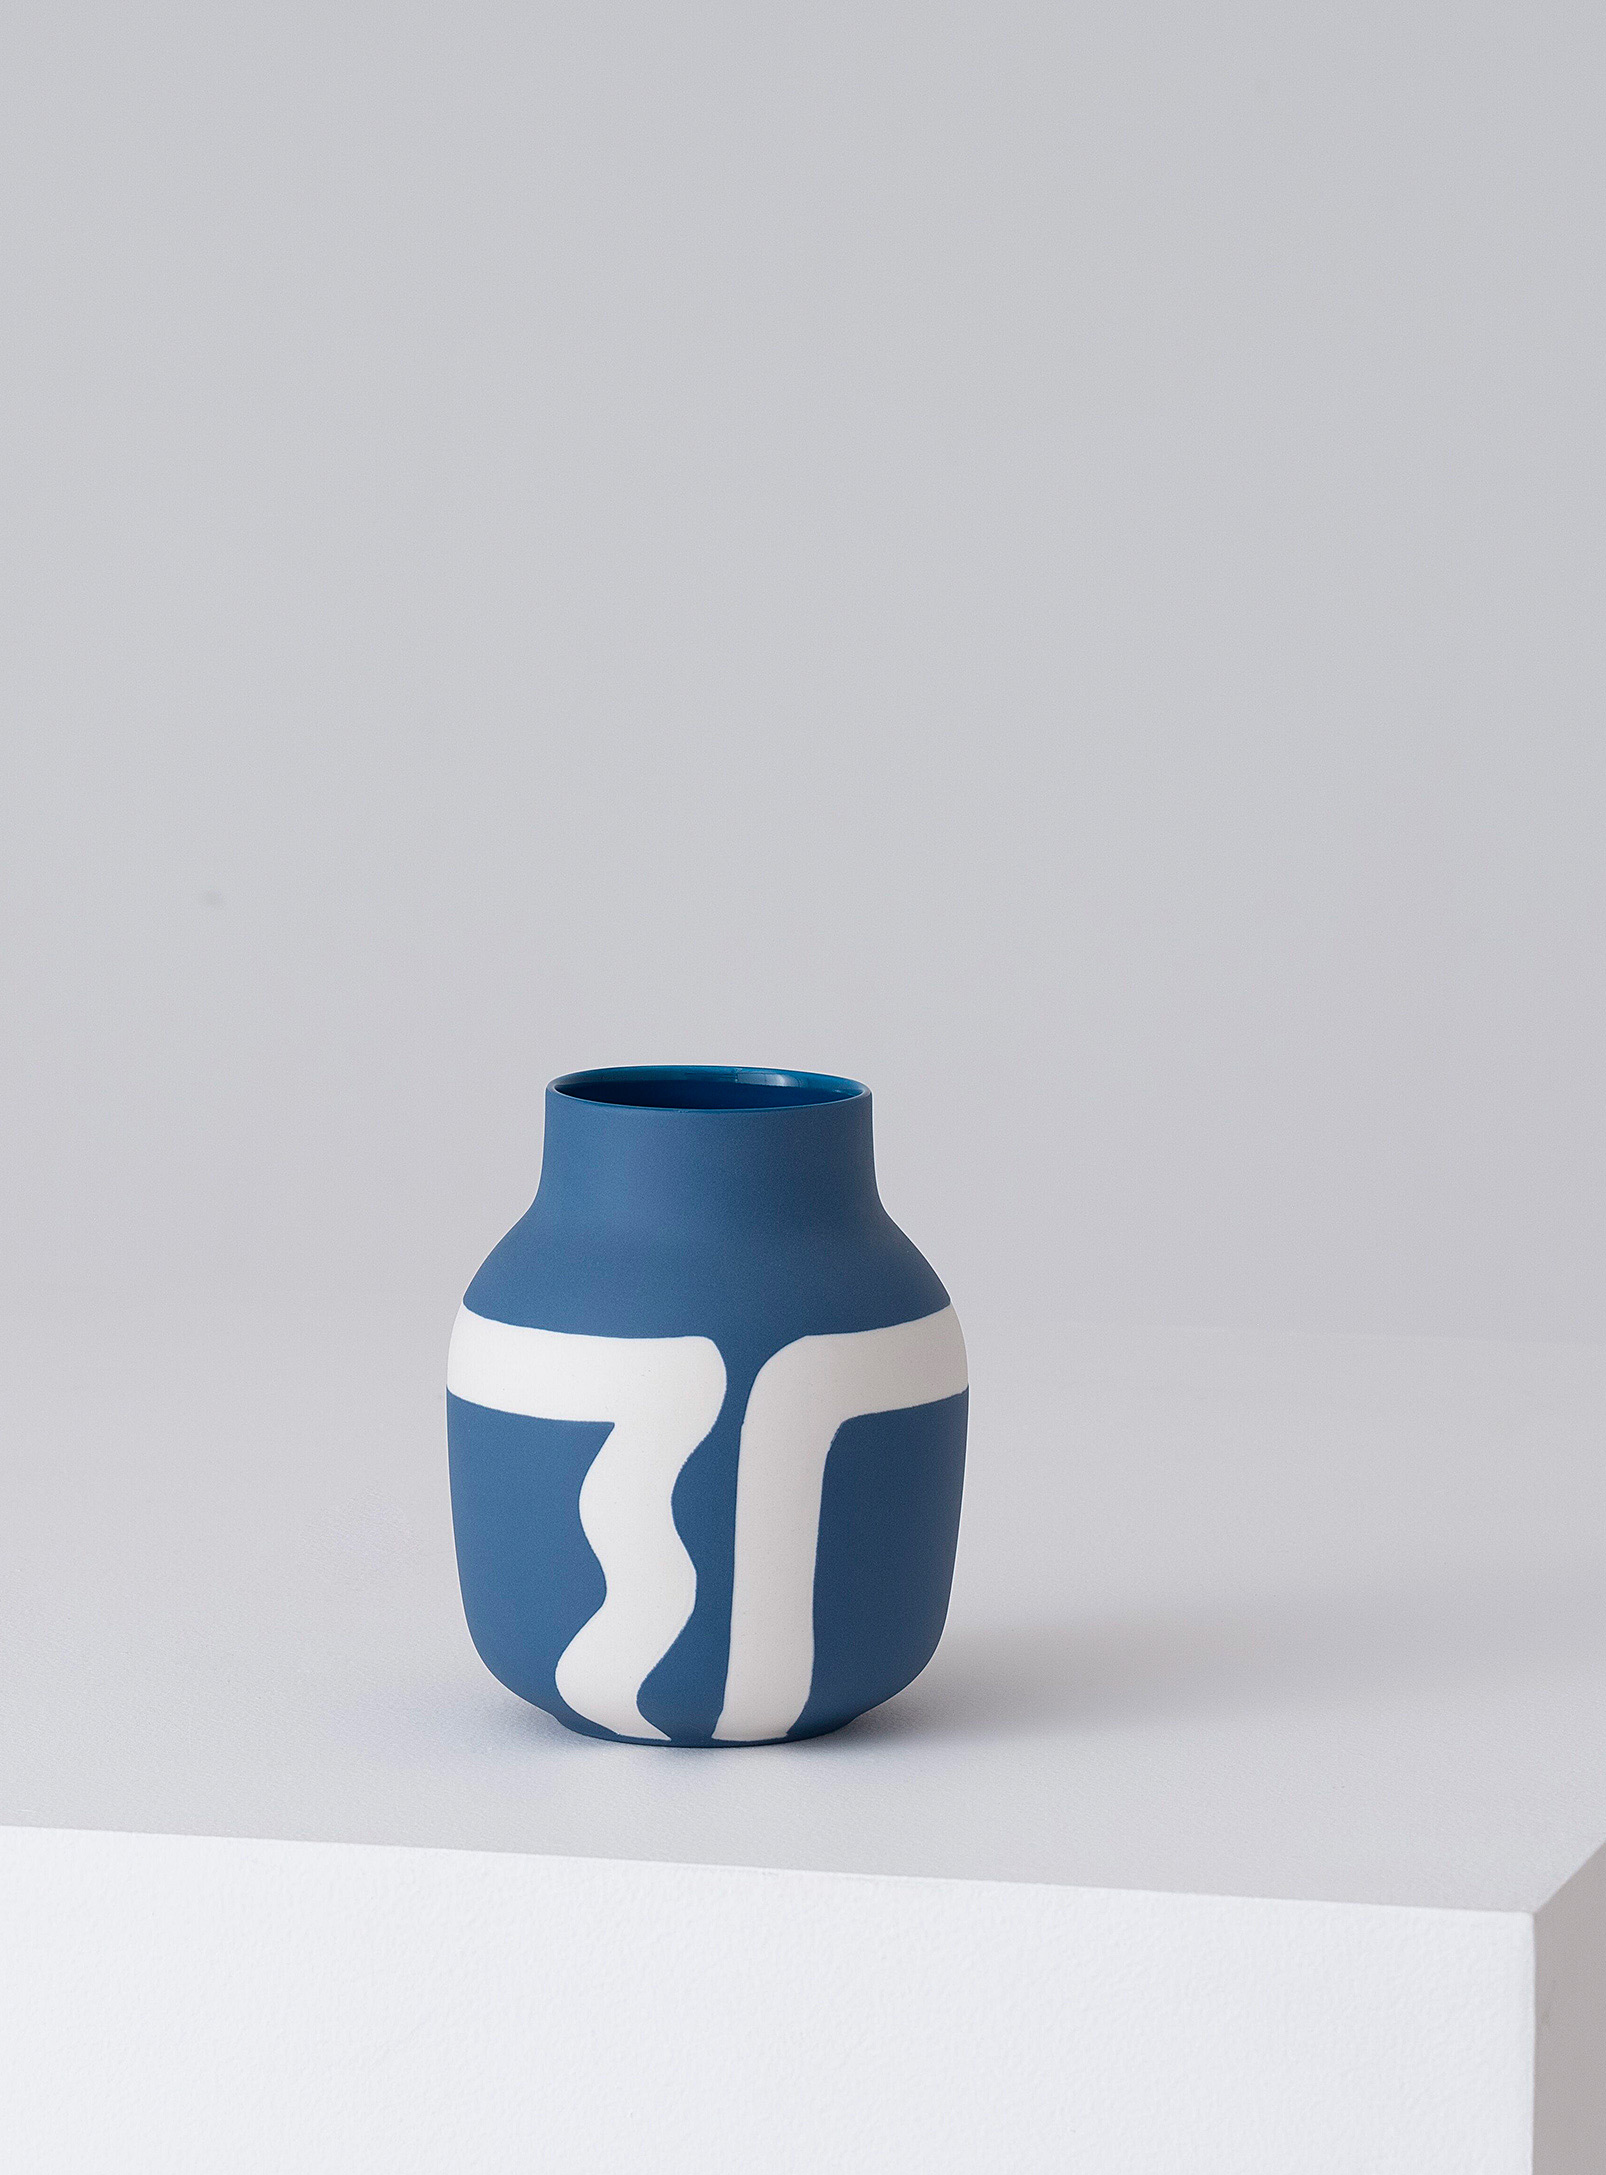 EQ3 - Le petit vase artisanal tracé sinueux 17,75 cm de hauteur